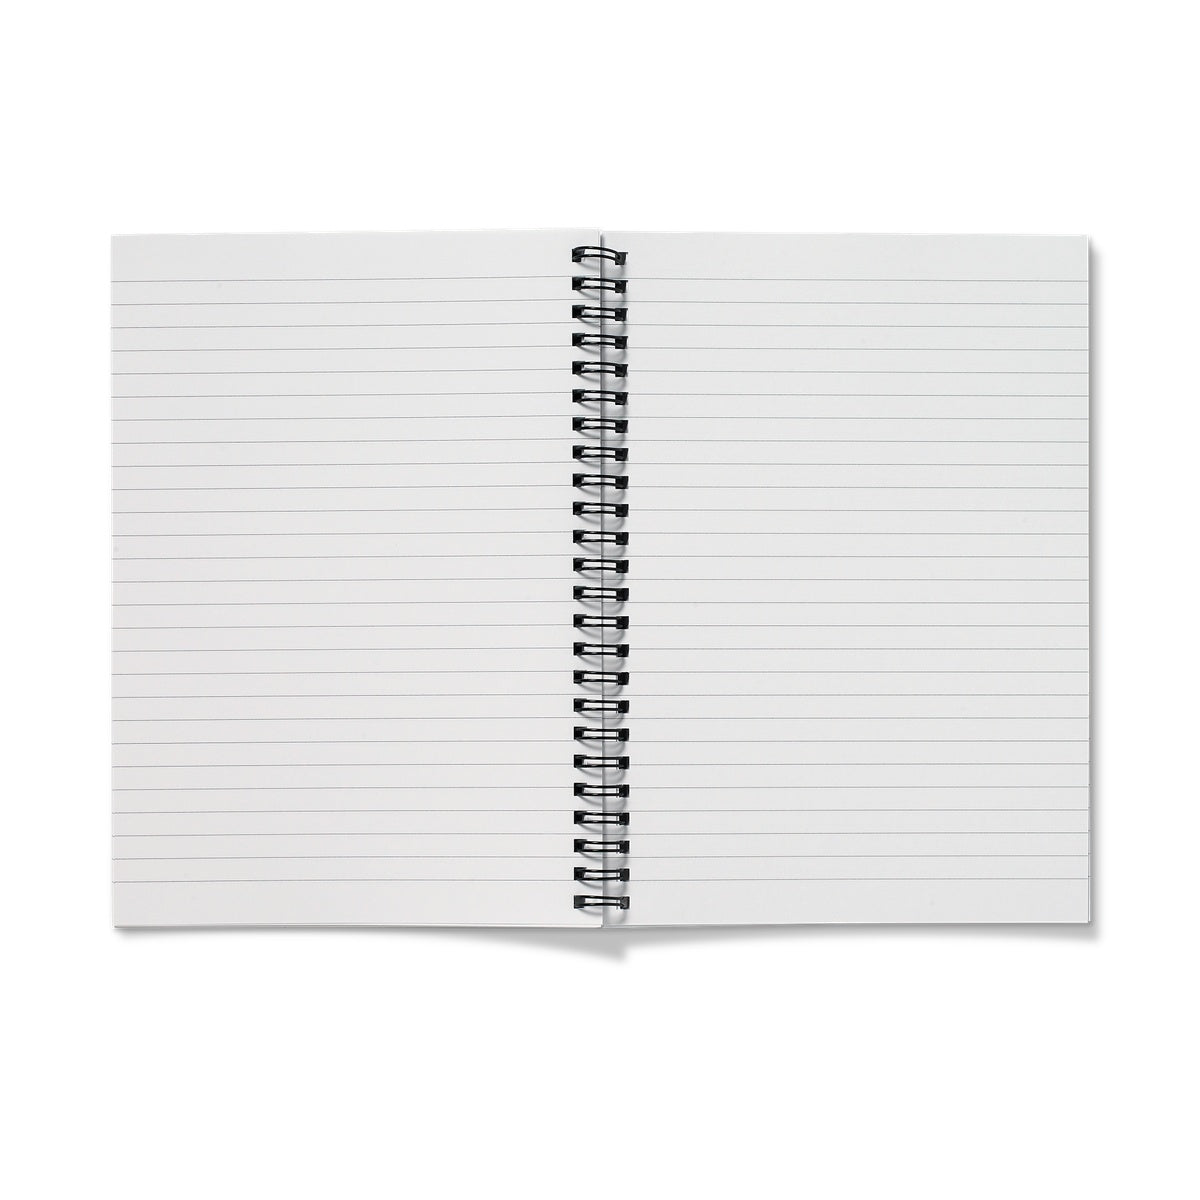 Spiral Notebooks | Nduta Designs